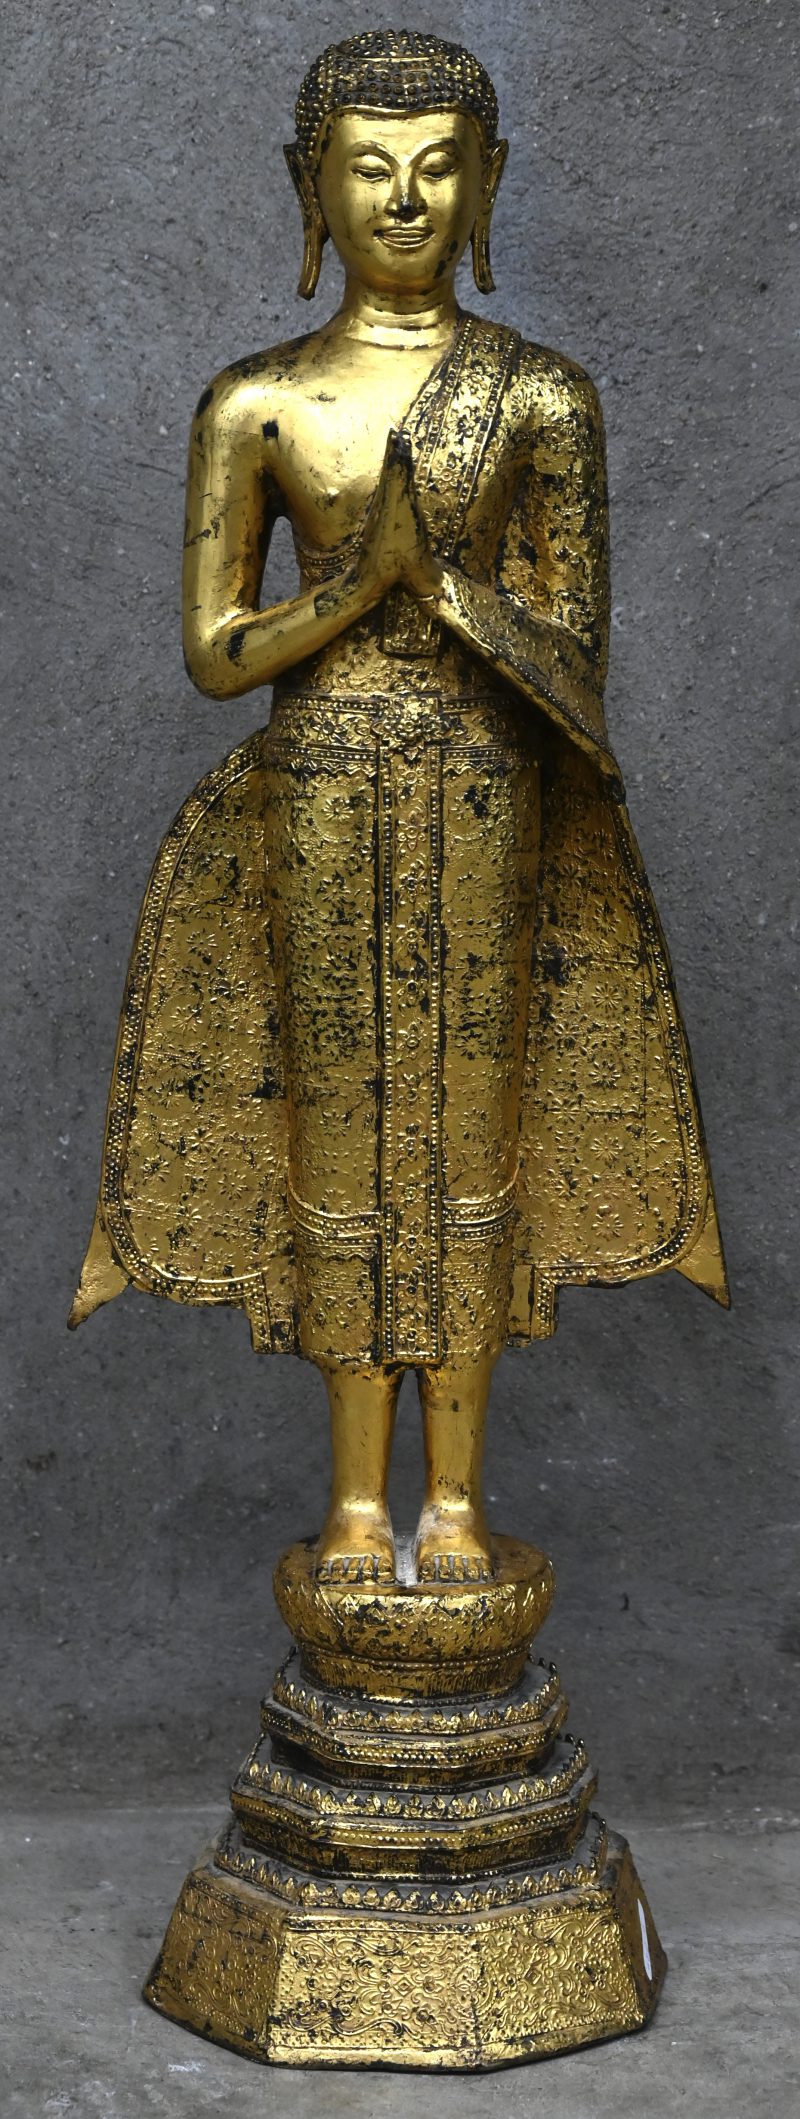 Een staande Thaise Boeddha van verguld brons.